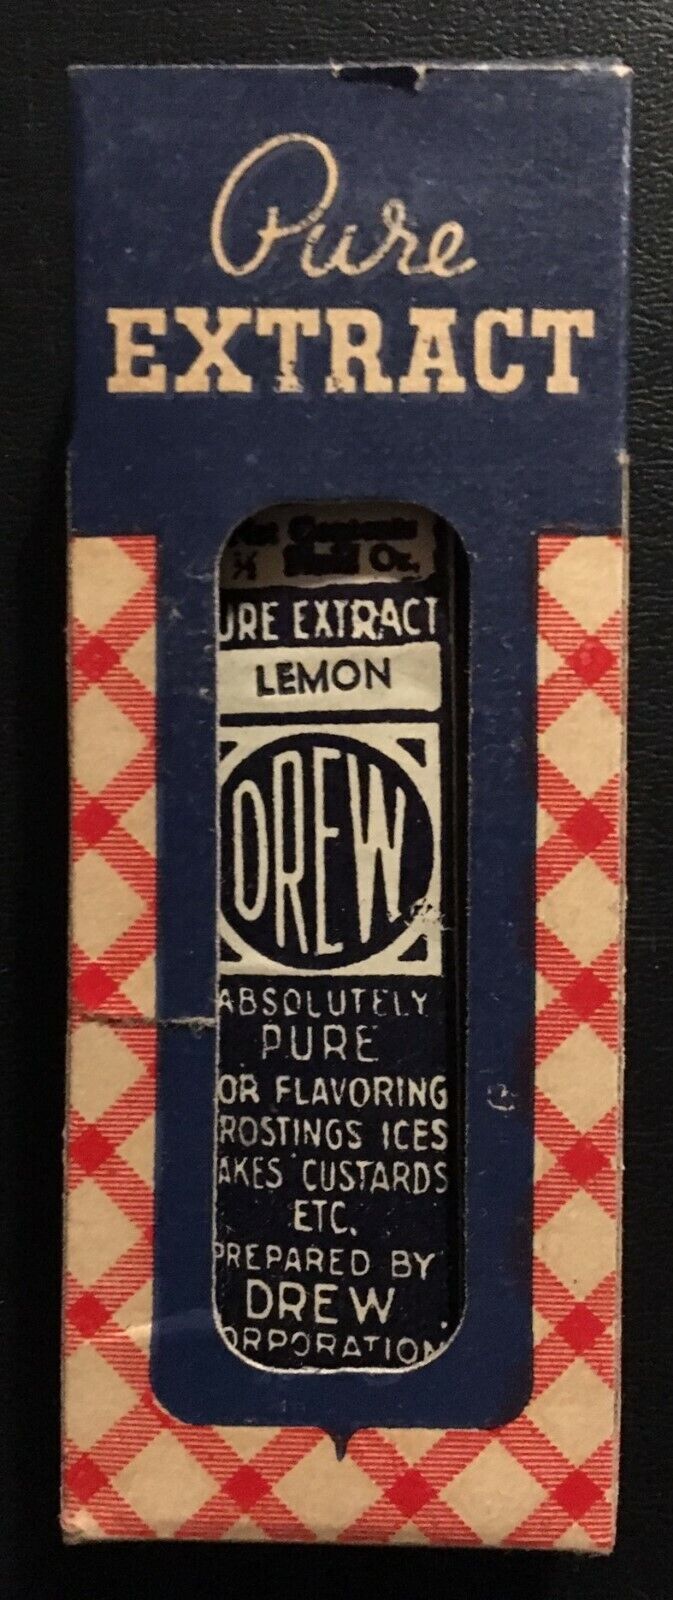 1920 Full Bottle of Drew Pure Lemon Extract in Original Red, White, Blue Box